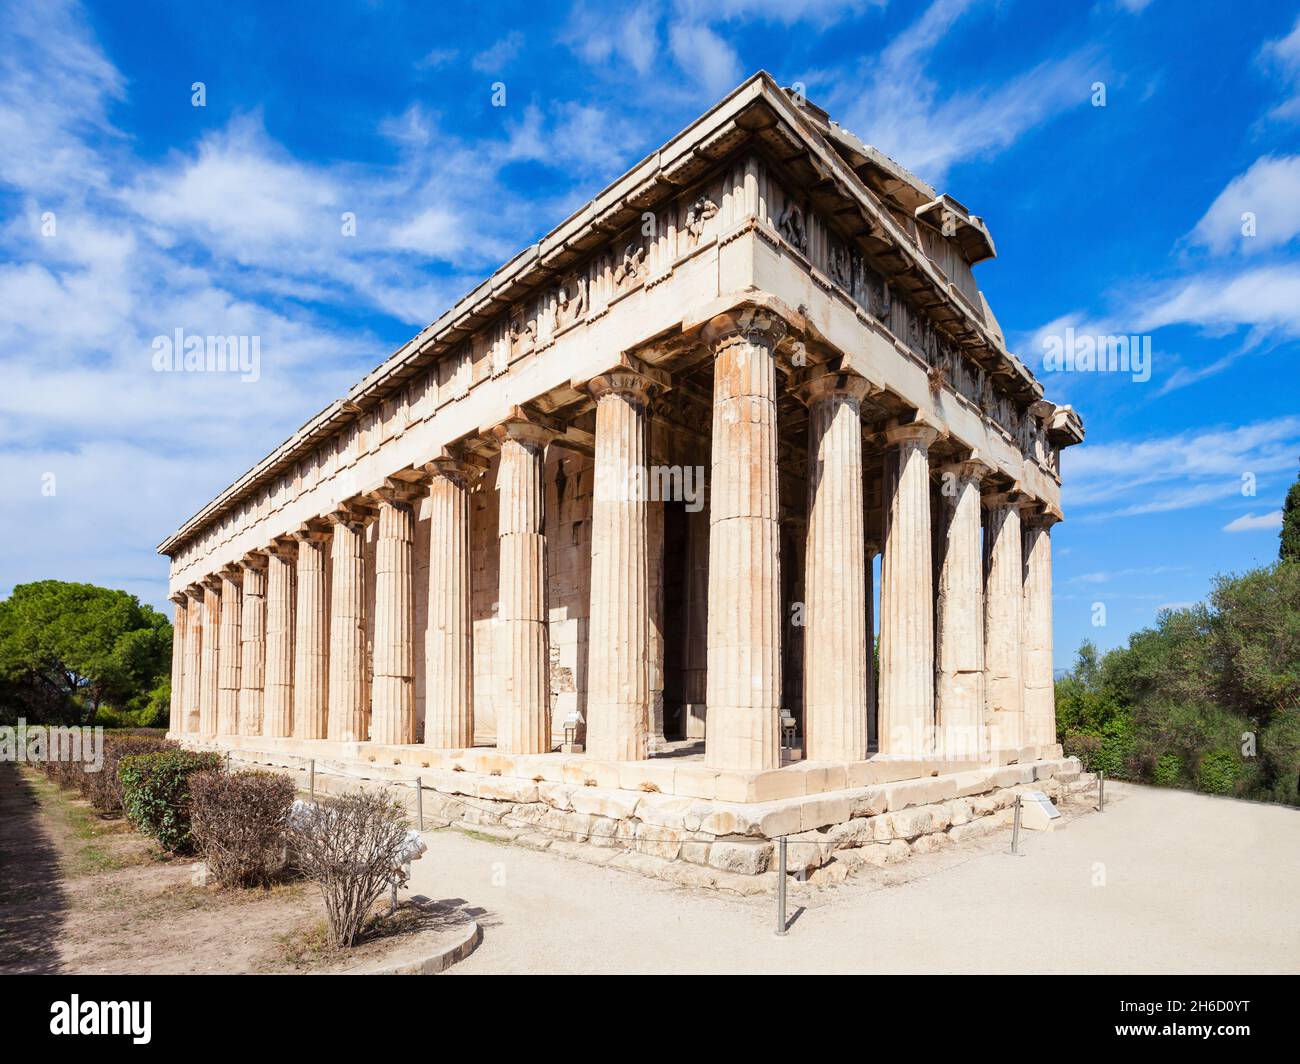 Le Temple d'Héphaïstos ou aussi Hephesteum Hephaisteion est un temple grec dorique, situé au nord-ouest de l'Agora d'Athènes Banque D'Images